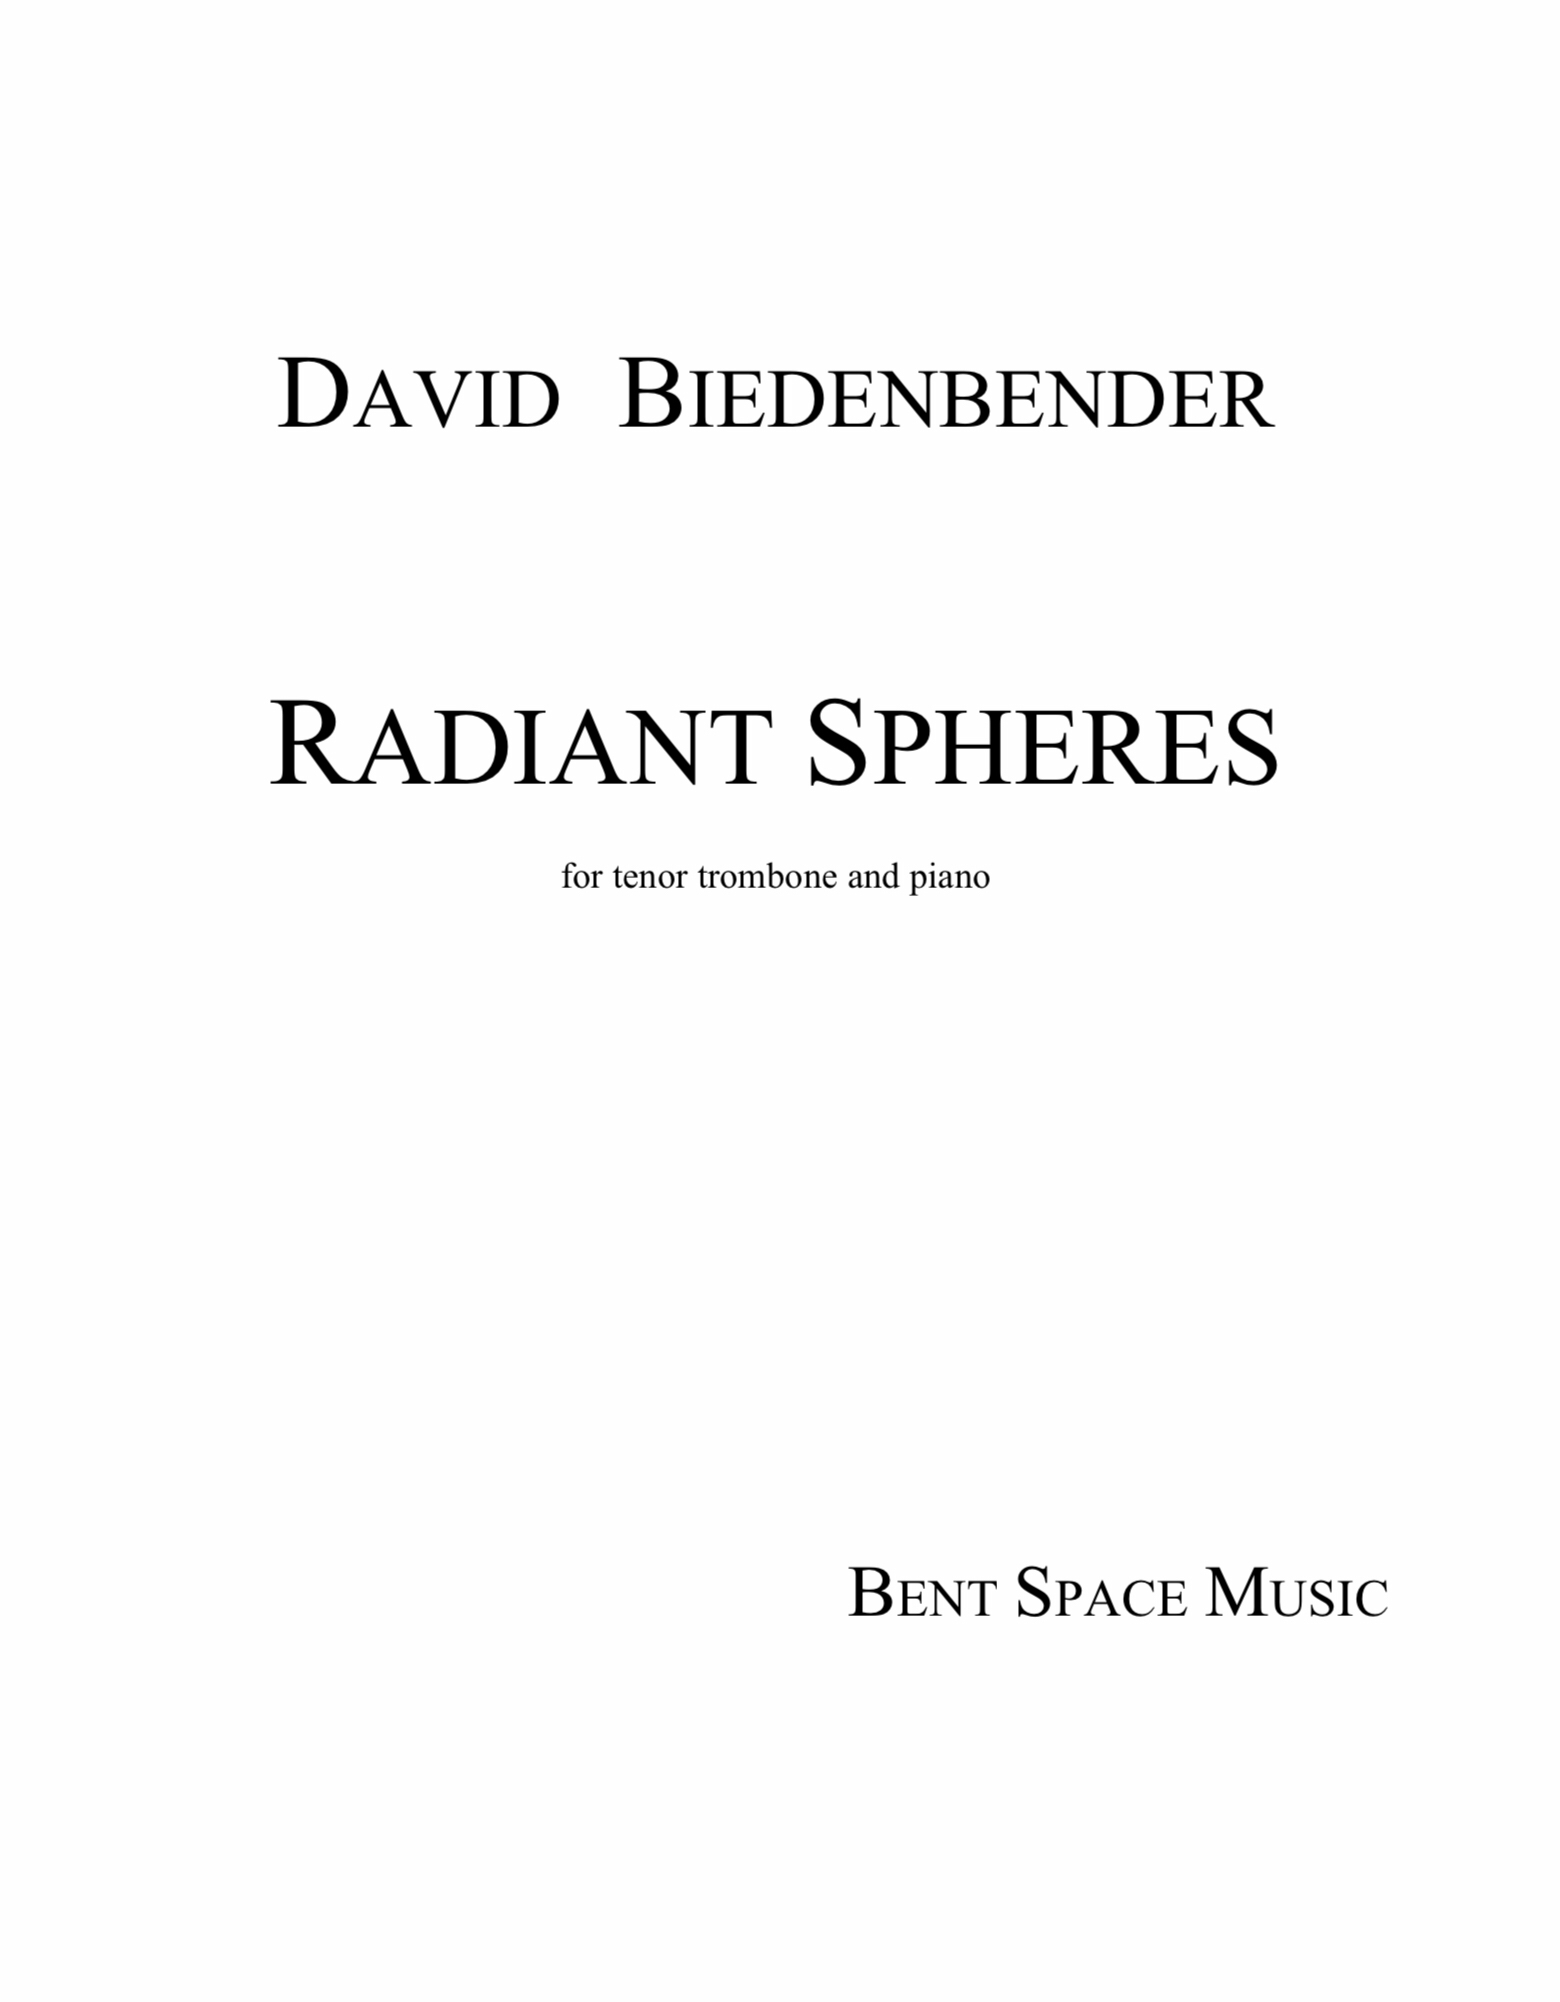 Radiant Spheres by David Biedenbender 